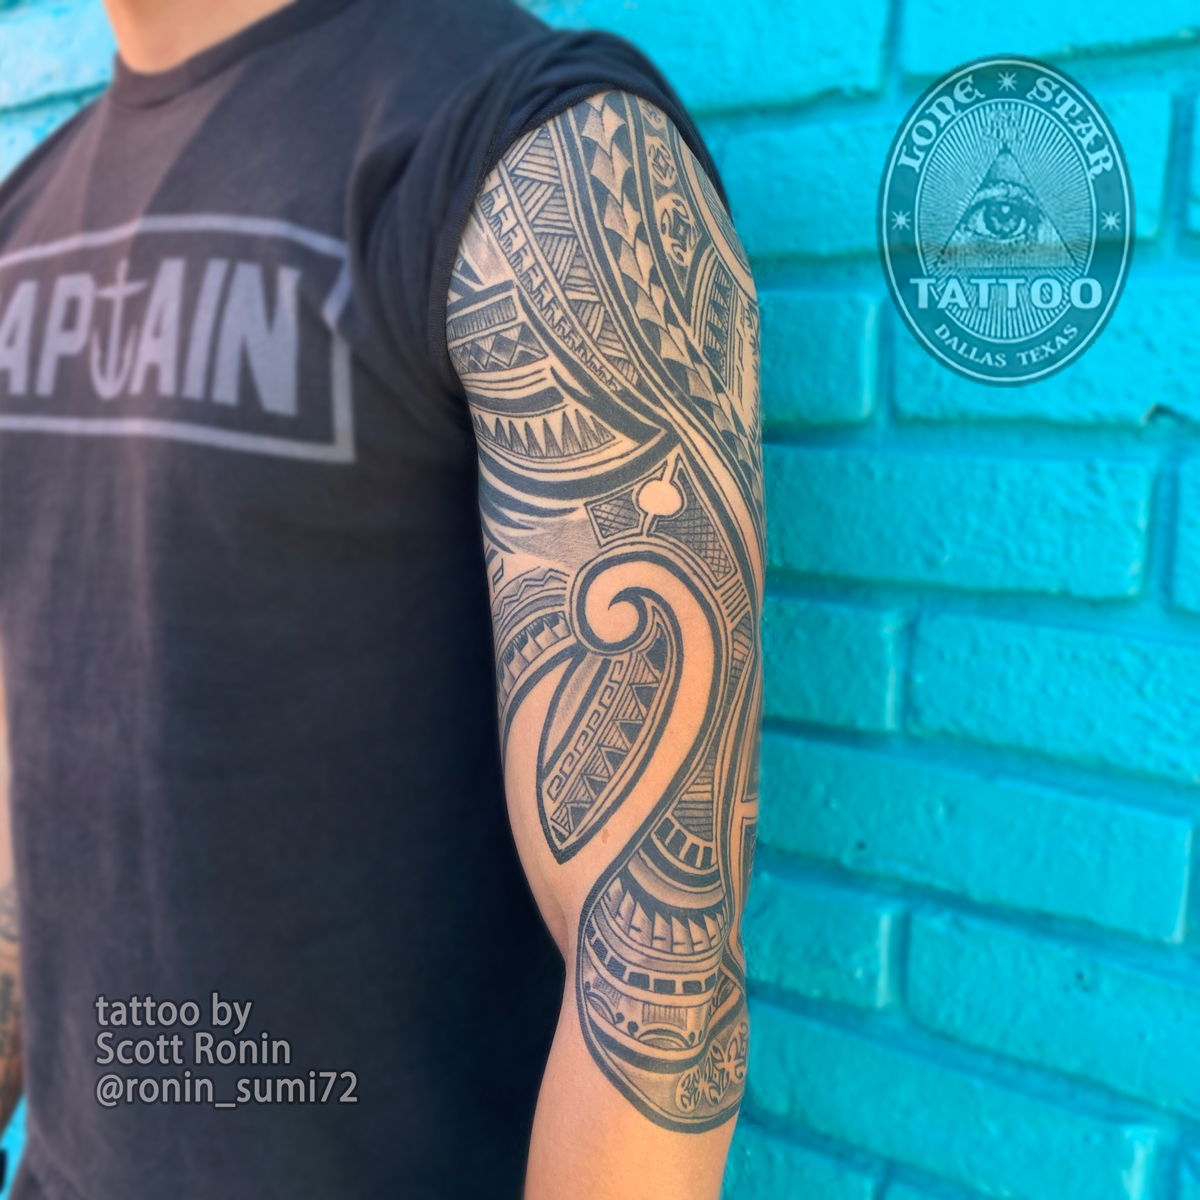 Scott Ronin Tattoo Artist - Tattoo Gallery - Lone Star Tattoo